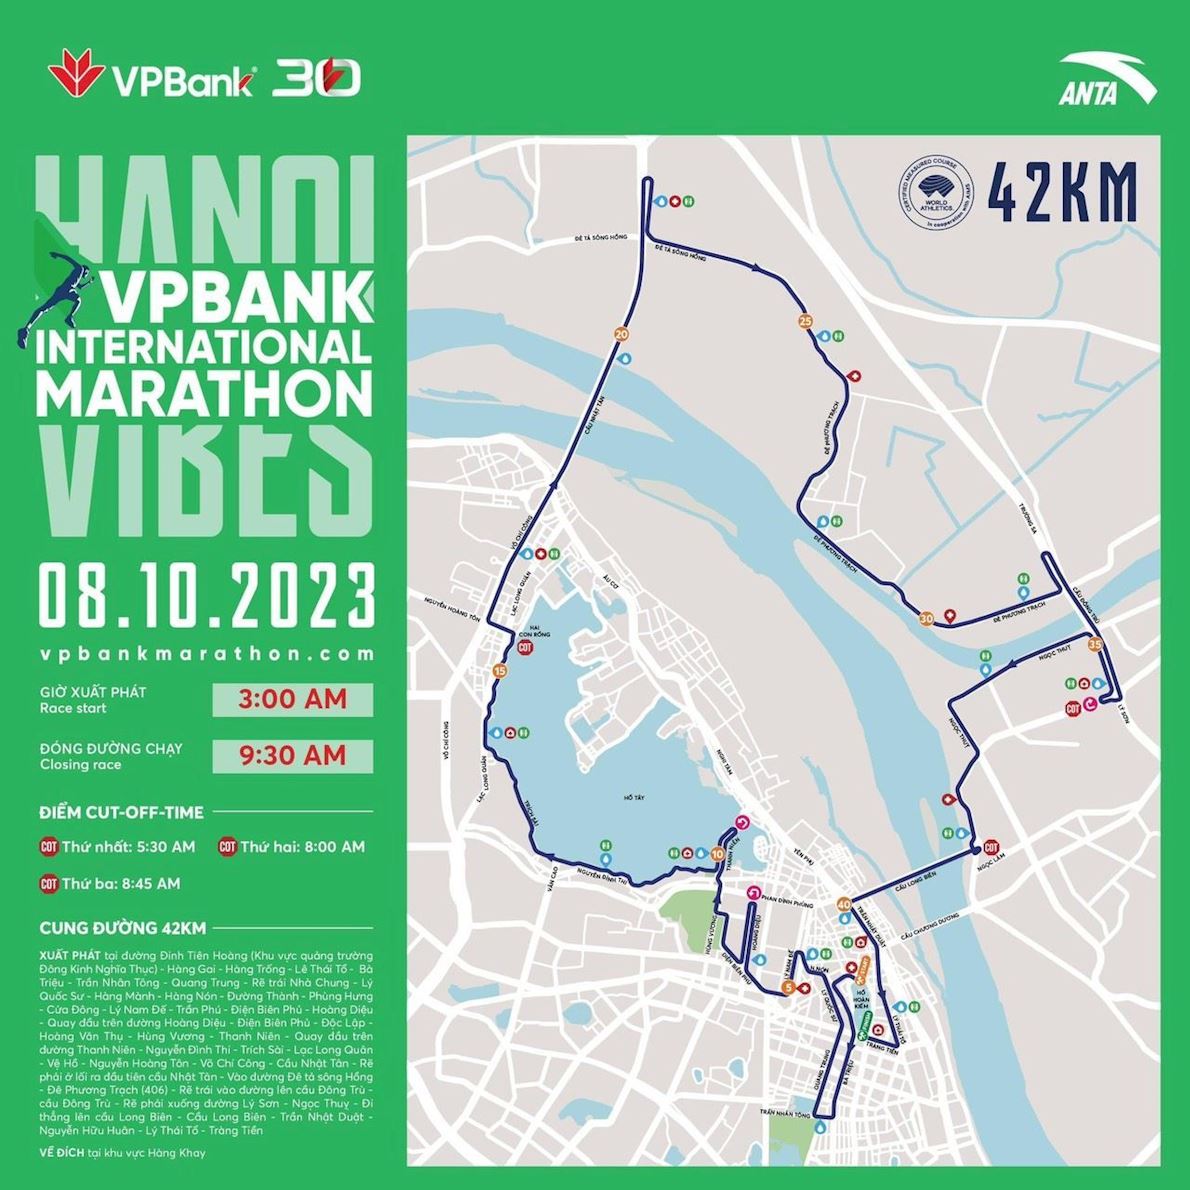 VPBank Hanoi International Marathon MAPA DEL RECORRIDO DE